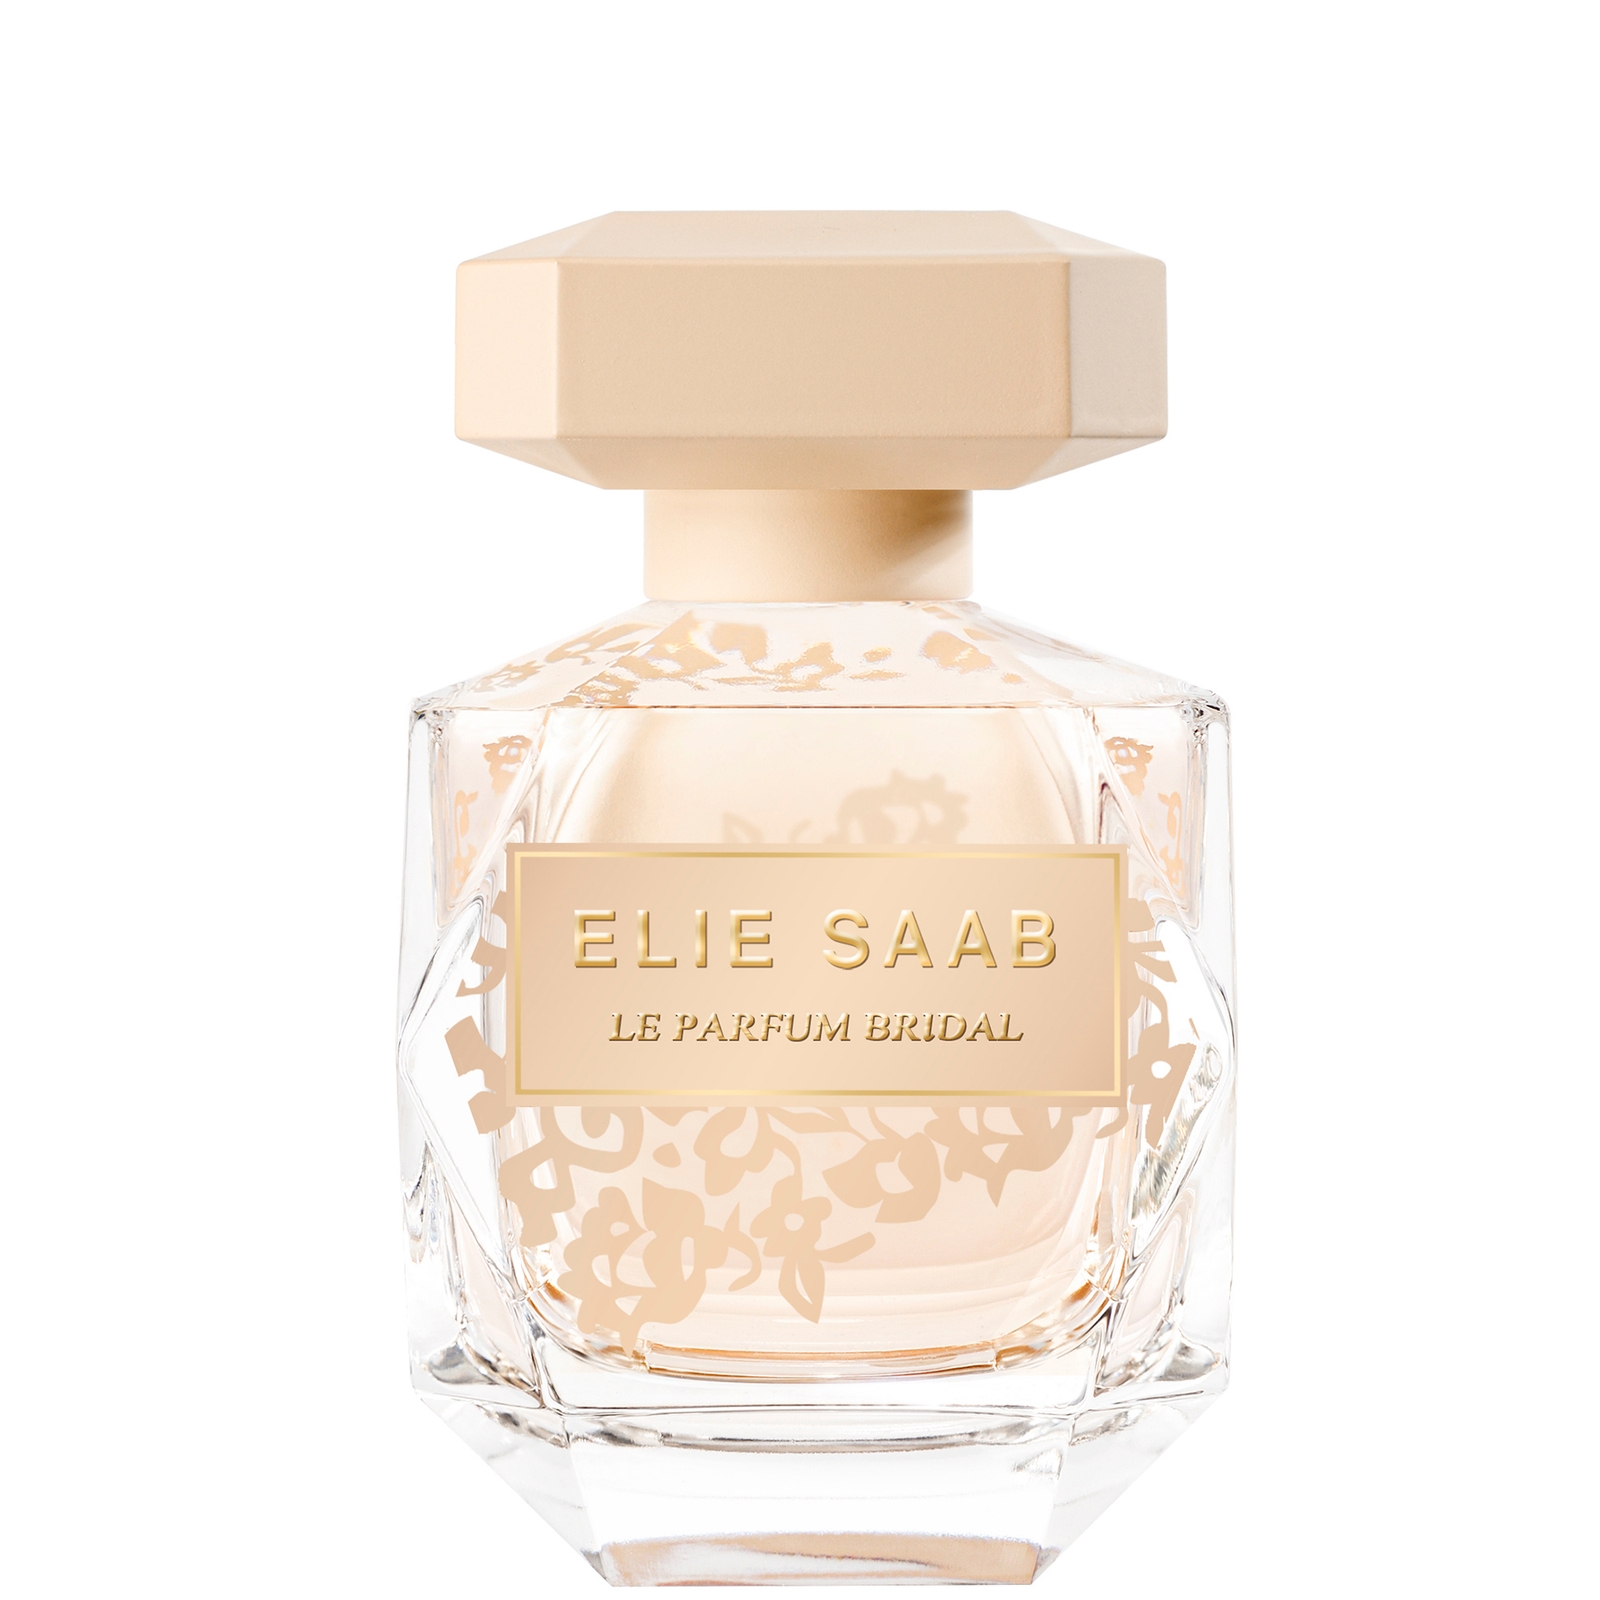 Image of Elie Saab Le Parfum Bridal Eau de Parfum Spray 90ml